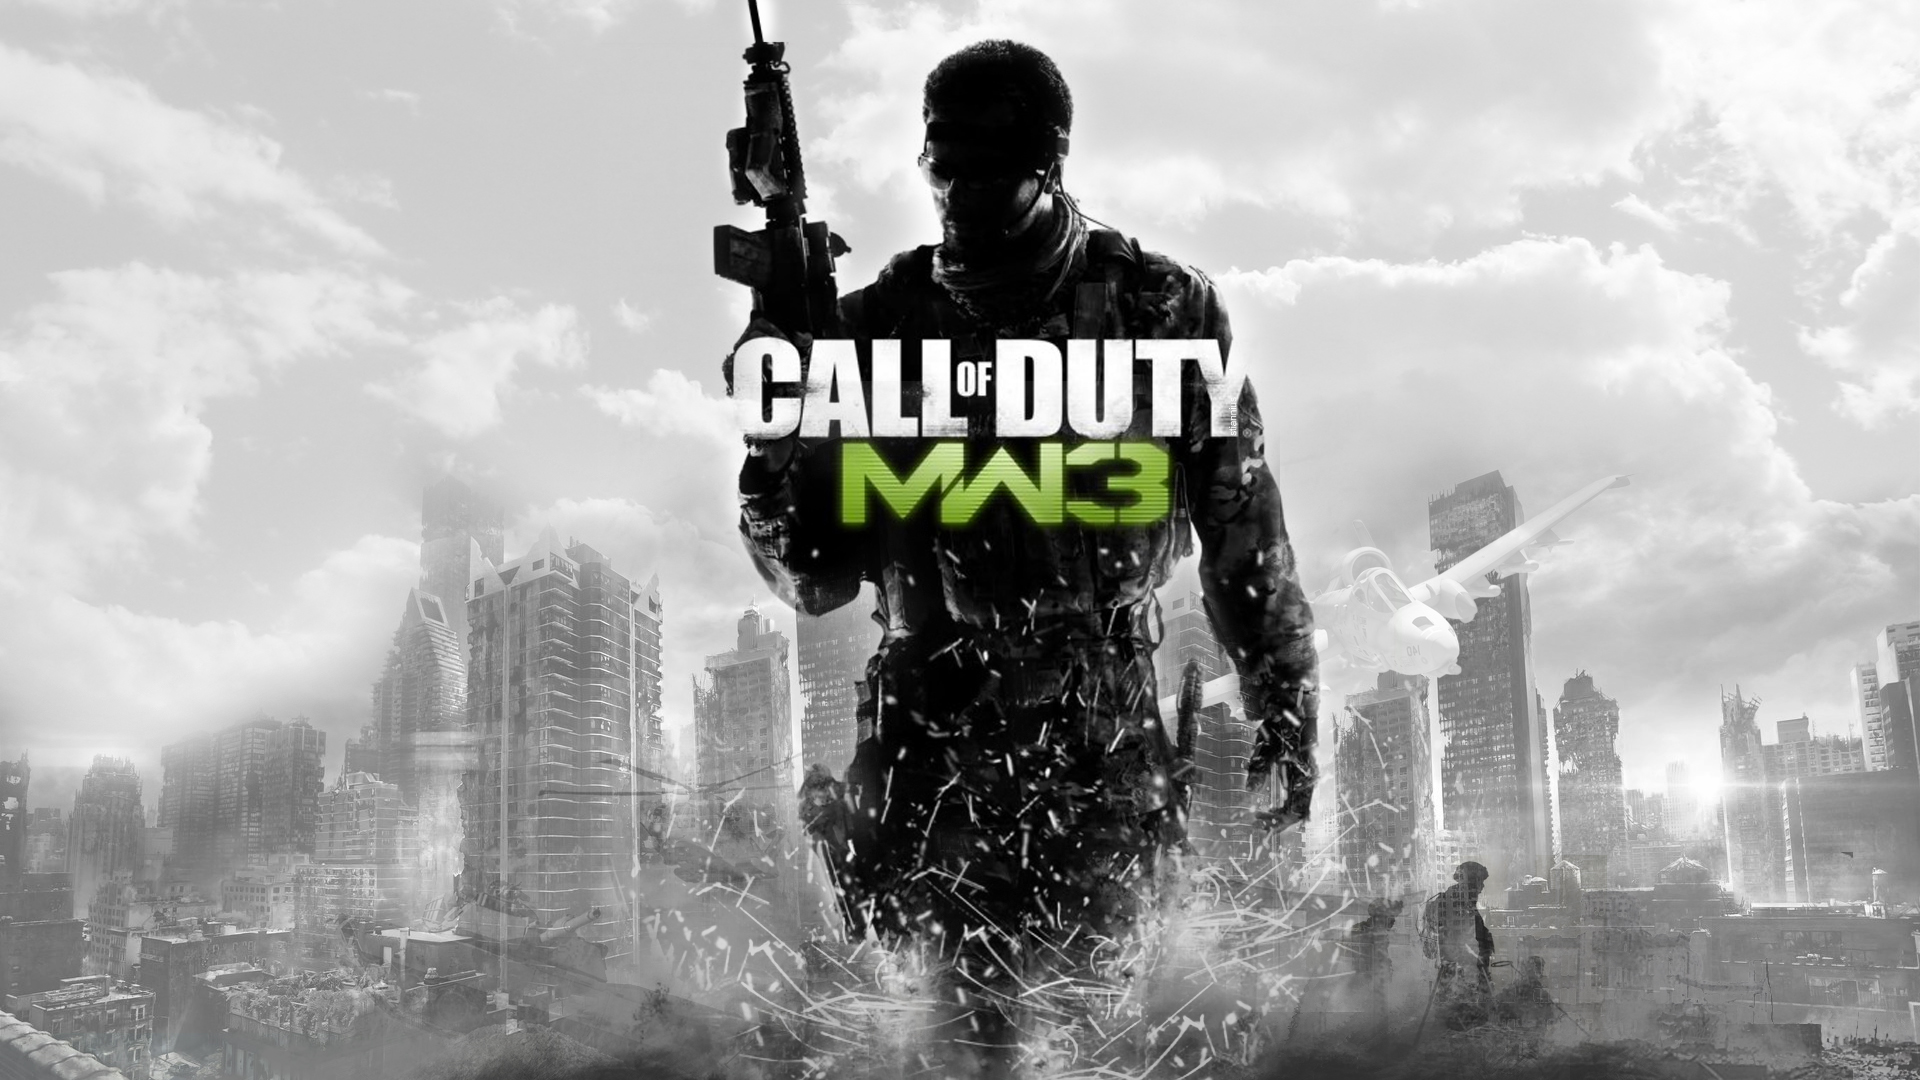 Call of Duty Modern Warfare 3 Wallpaper image - maikan09 ... - 